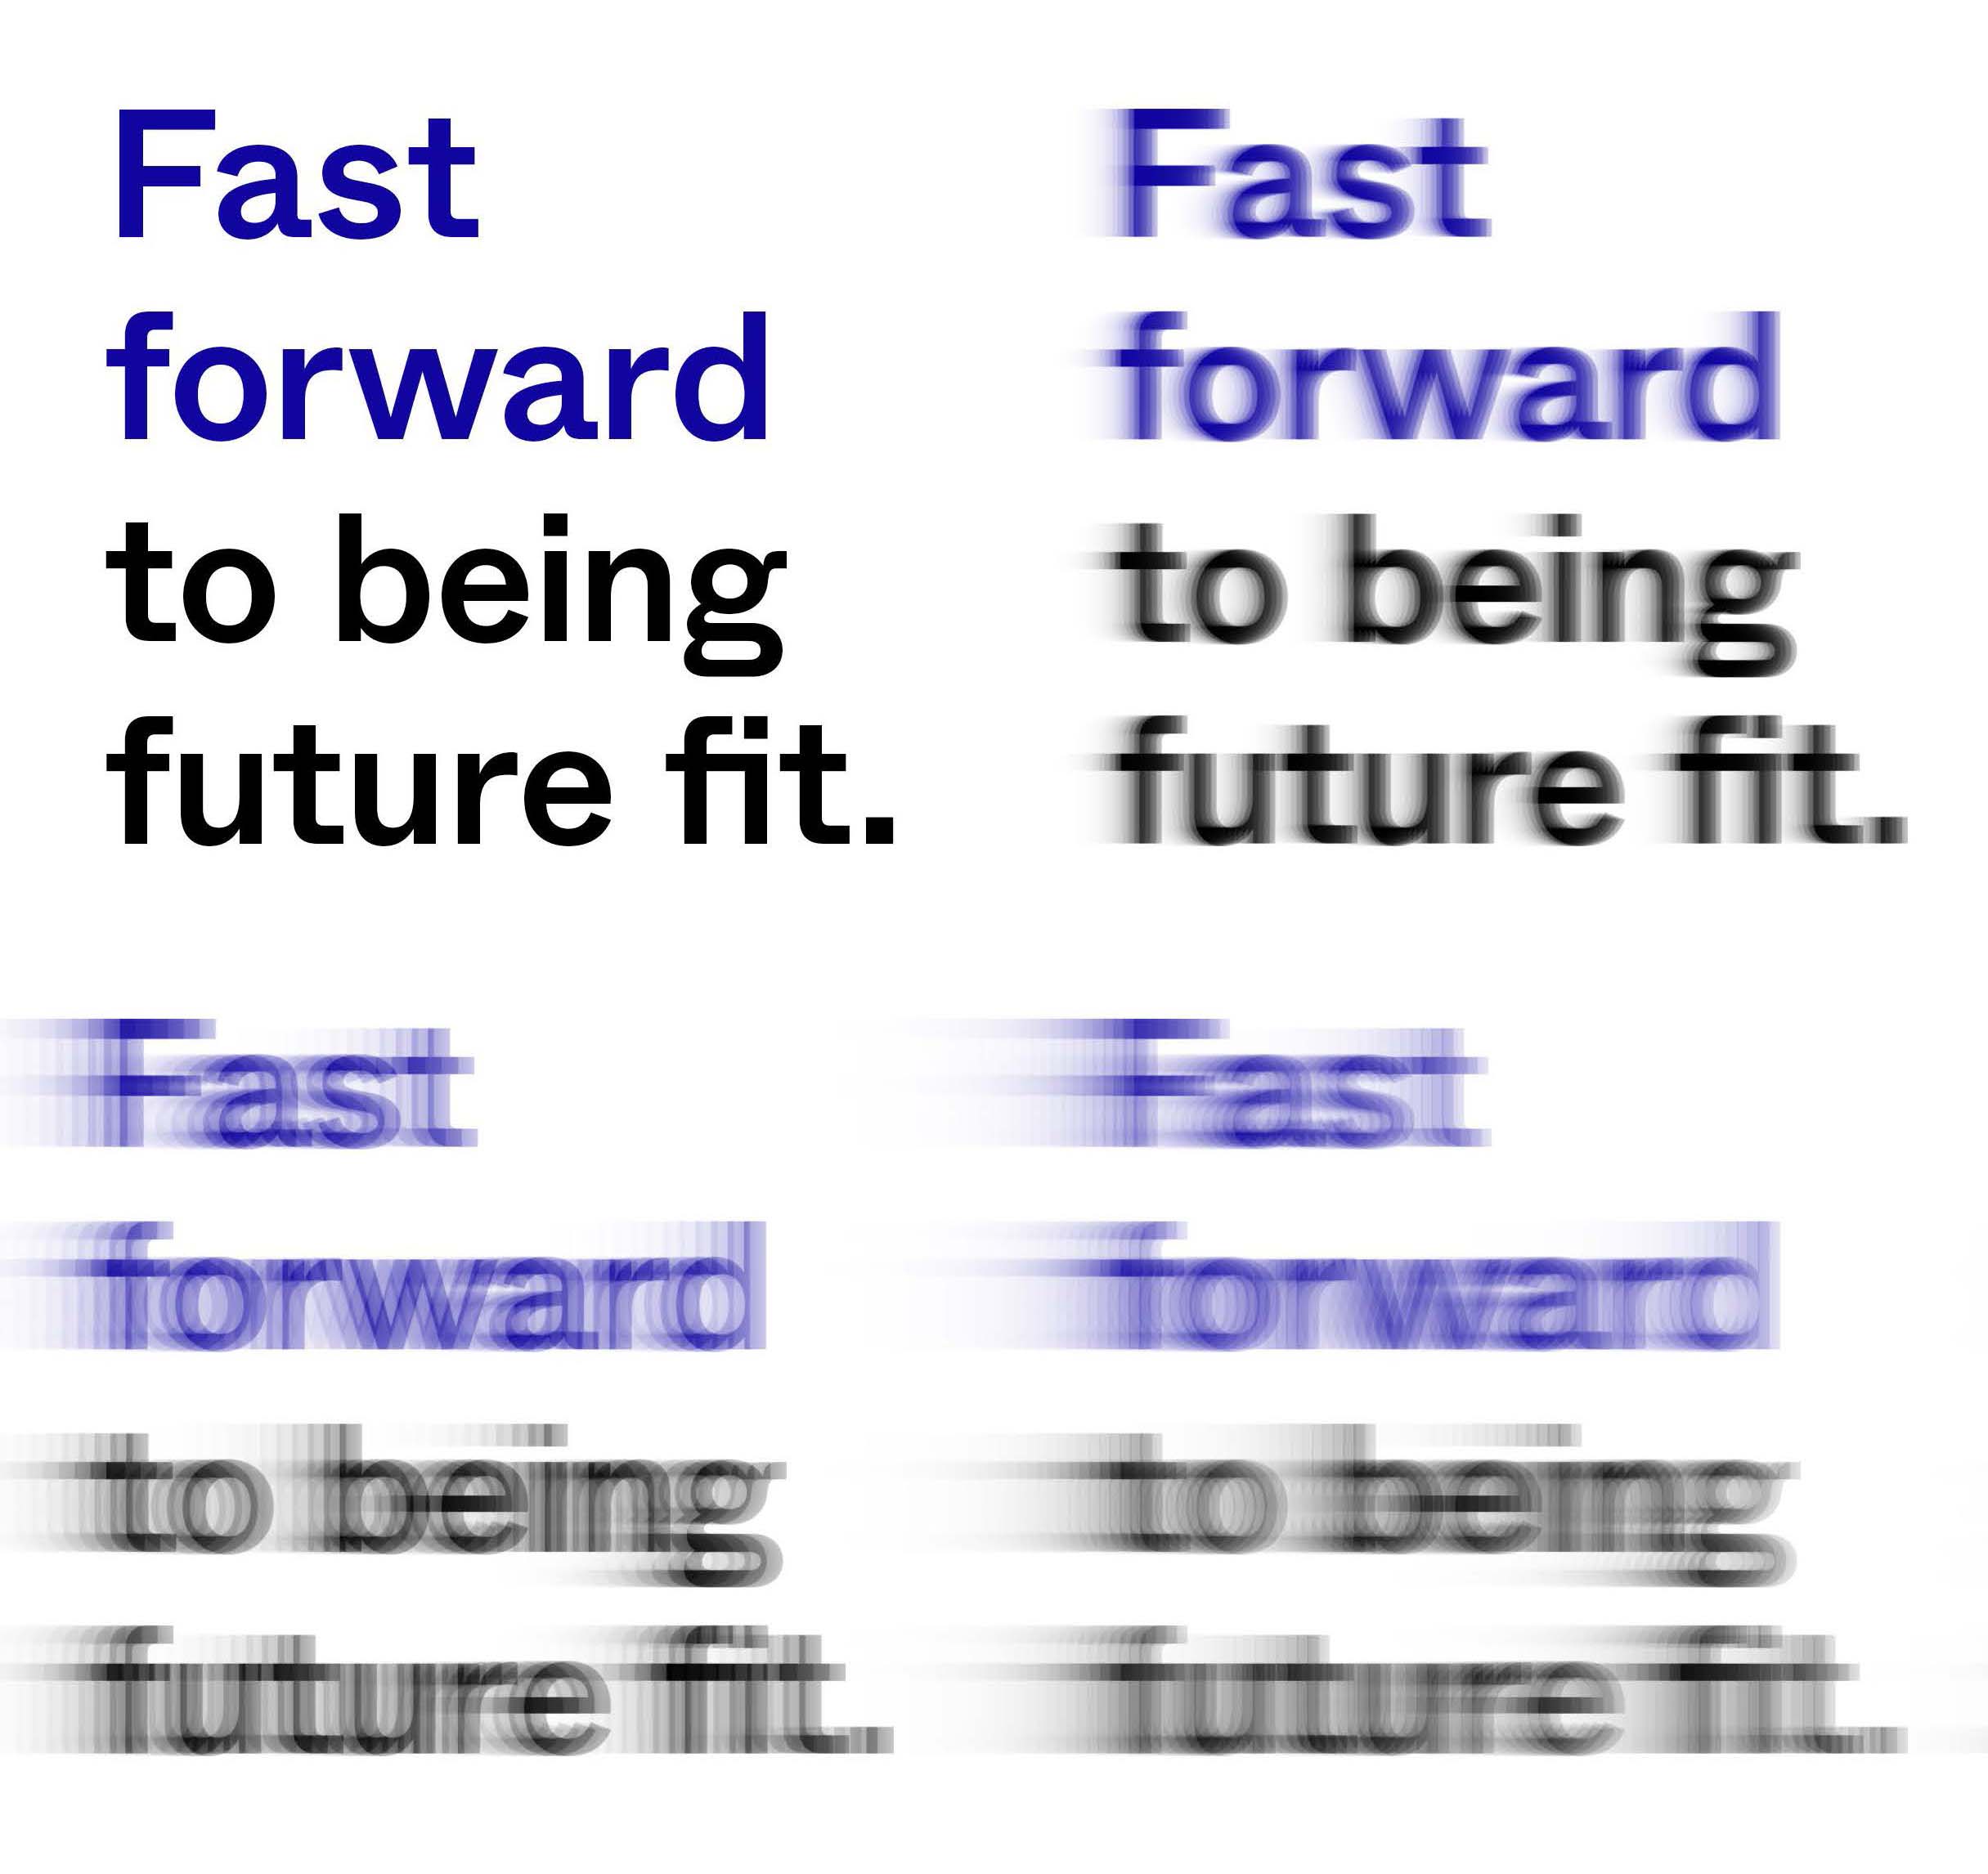 PW_Fast_Forward